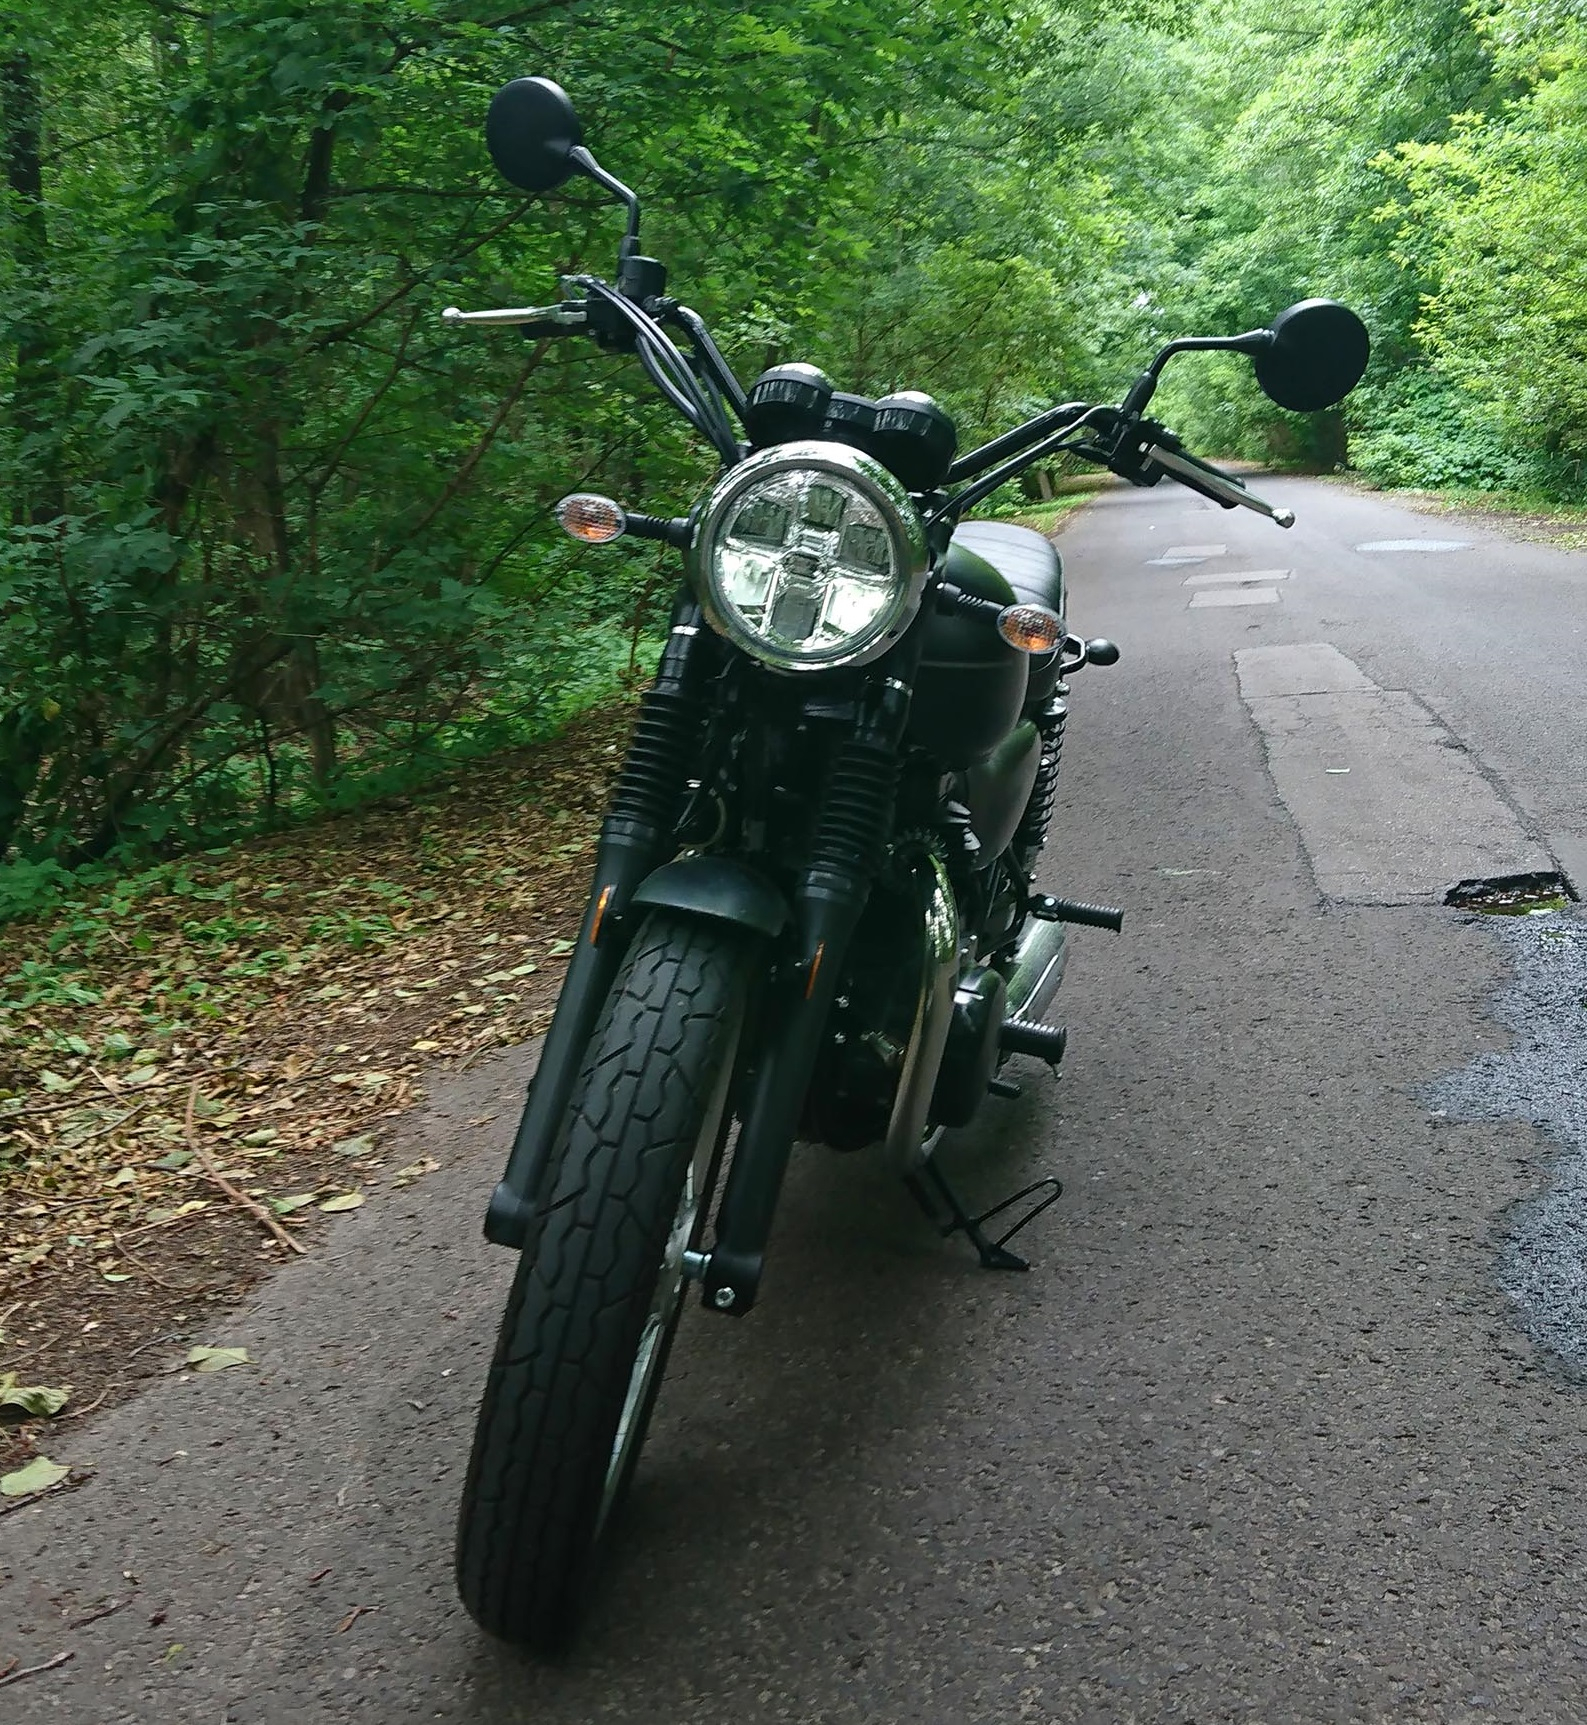 Kawasaki W800 Street - Klasyczny motocykl w nowym wydaniu